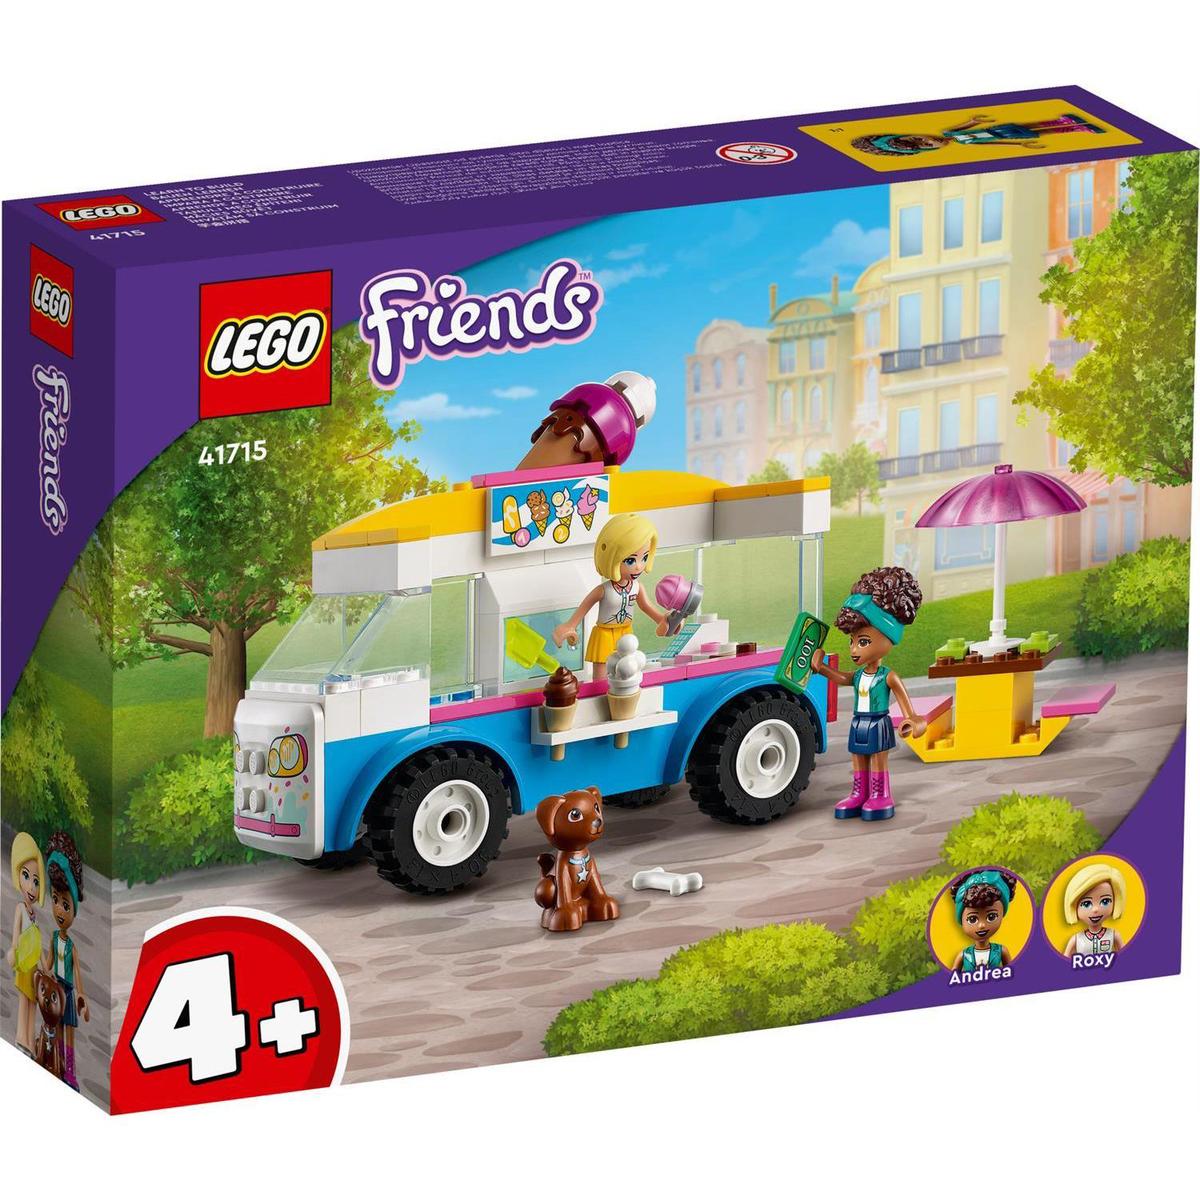 LEGO Friends 41723 La Boutique de Donuts, Jouet Enfants 4 Ans